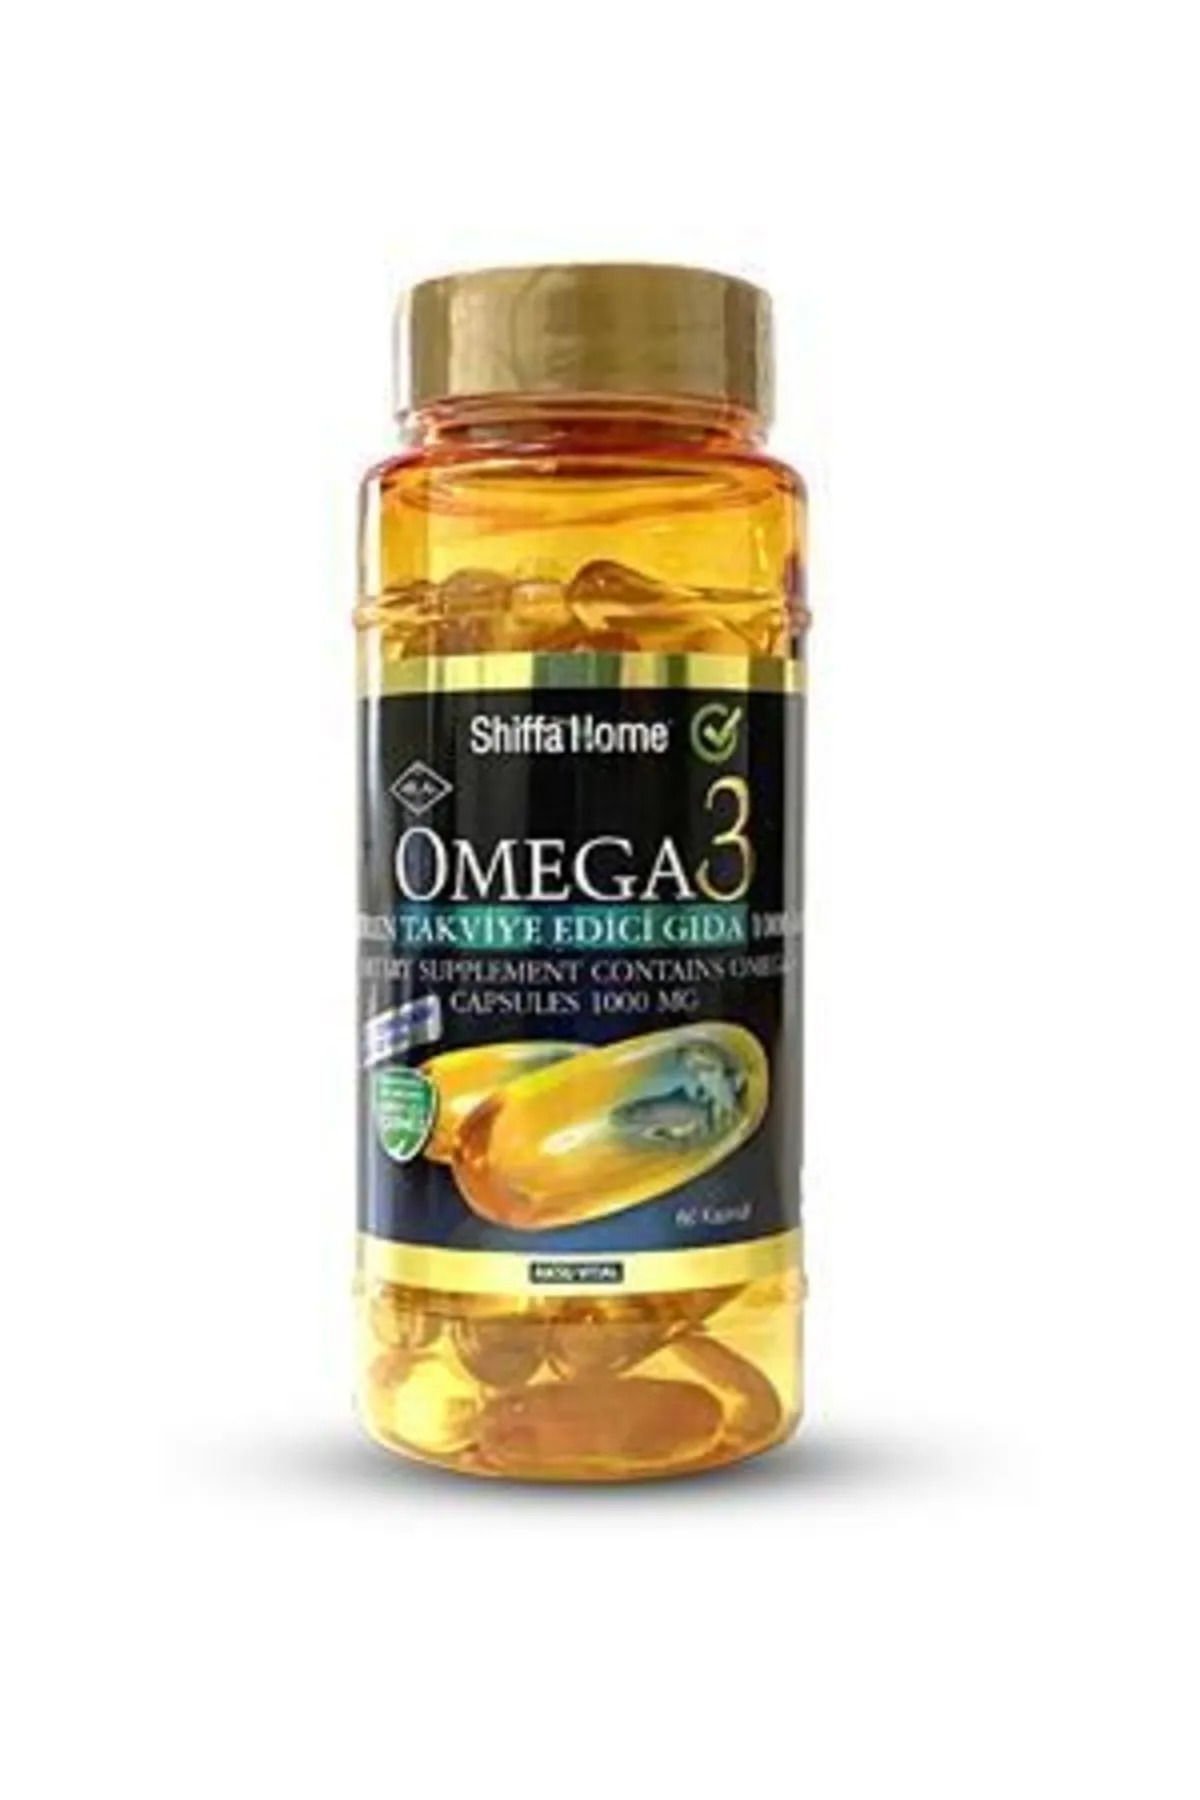 Shiffa Home Omega 3 Balık Yağı 1000 Mg 200 Softjel